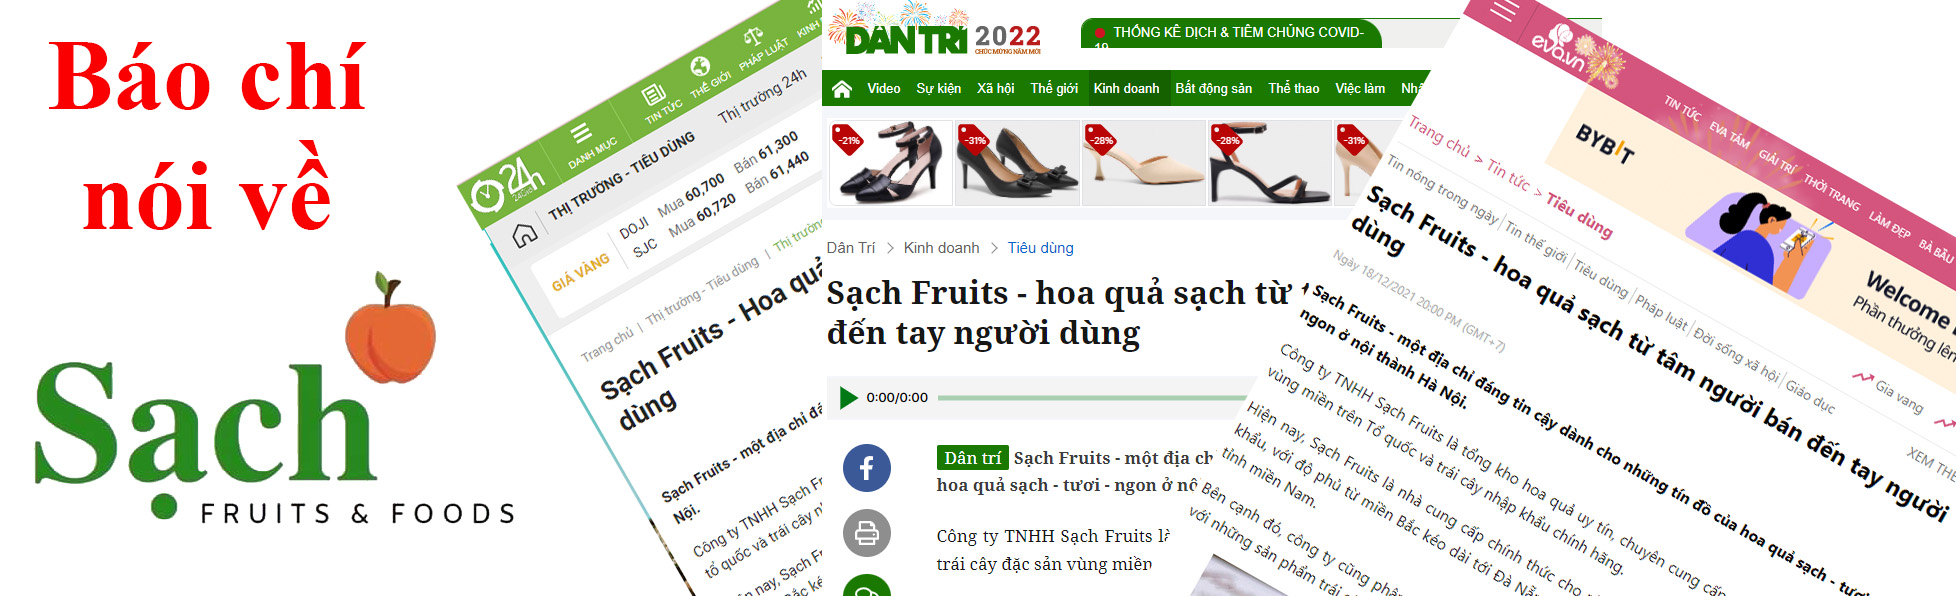 Báo chí nói về Sạch Fruits